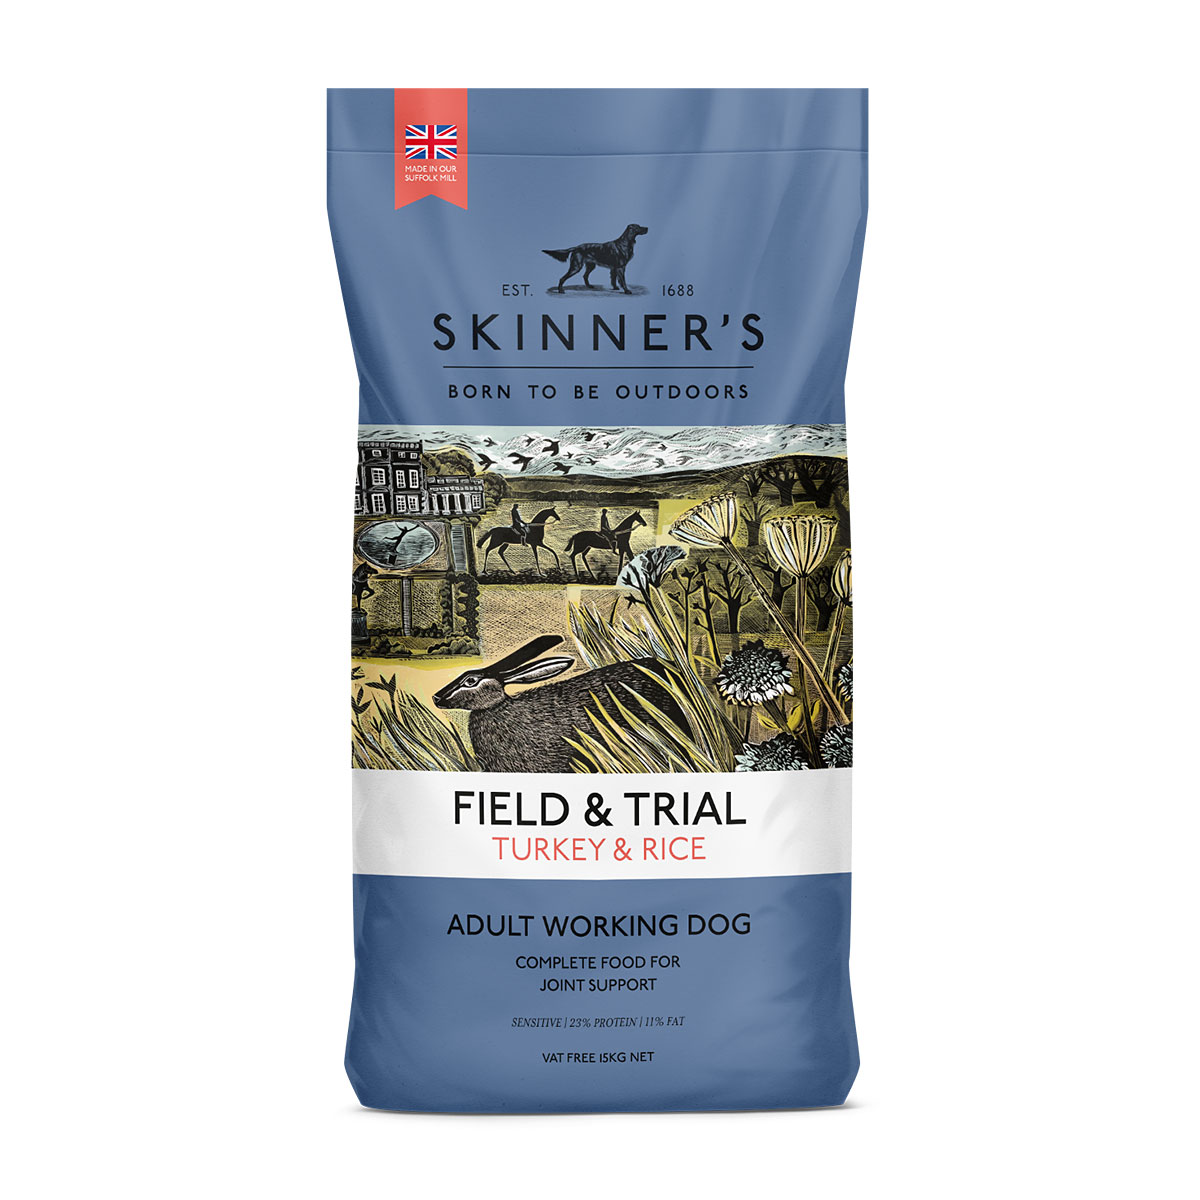 Skinners Field & Trial Turkey & Rice Bag